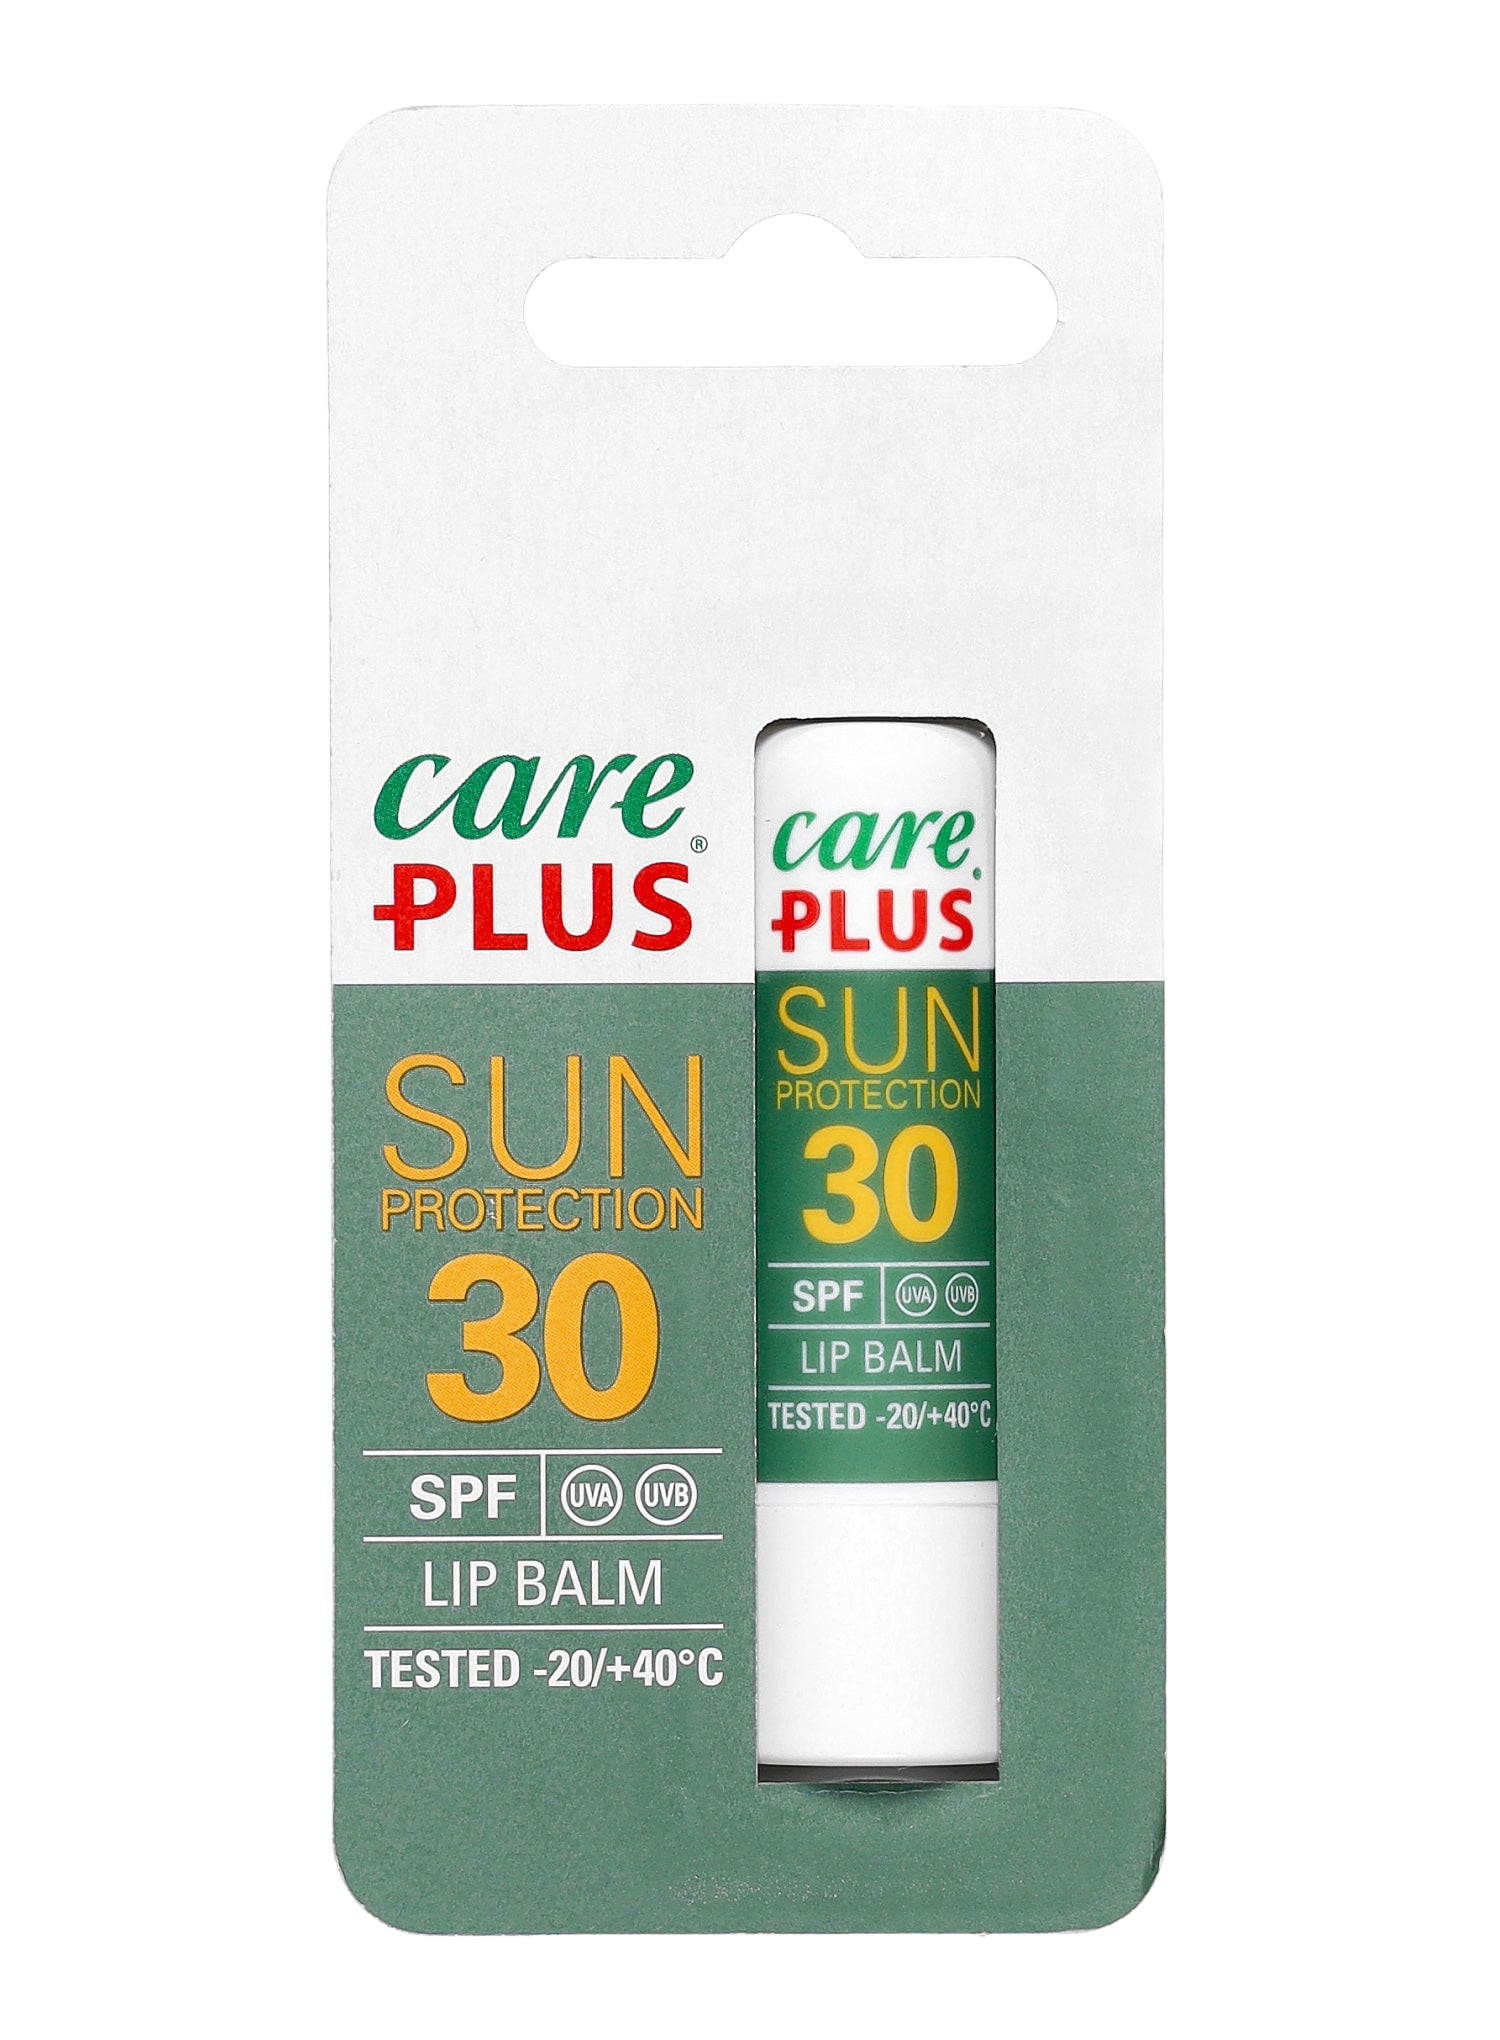 Care Plus Sun Protection Lipstick SPF 30+ - Burro Di Cacao - Neverland Firenze